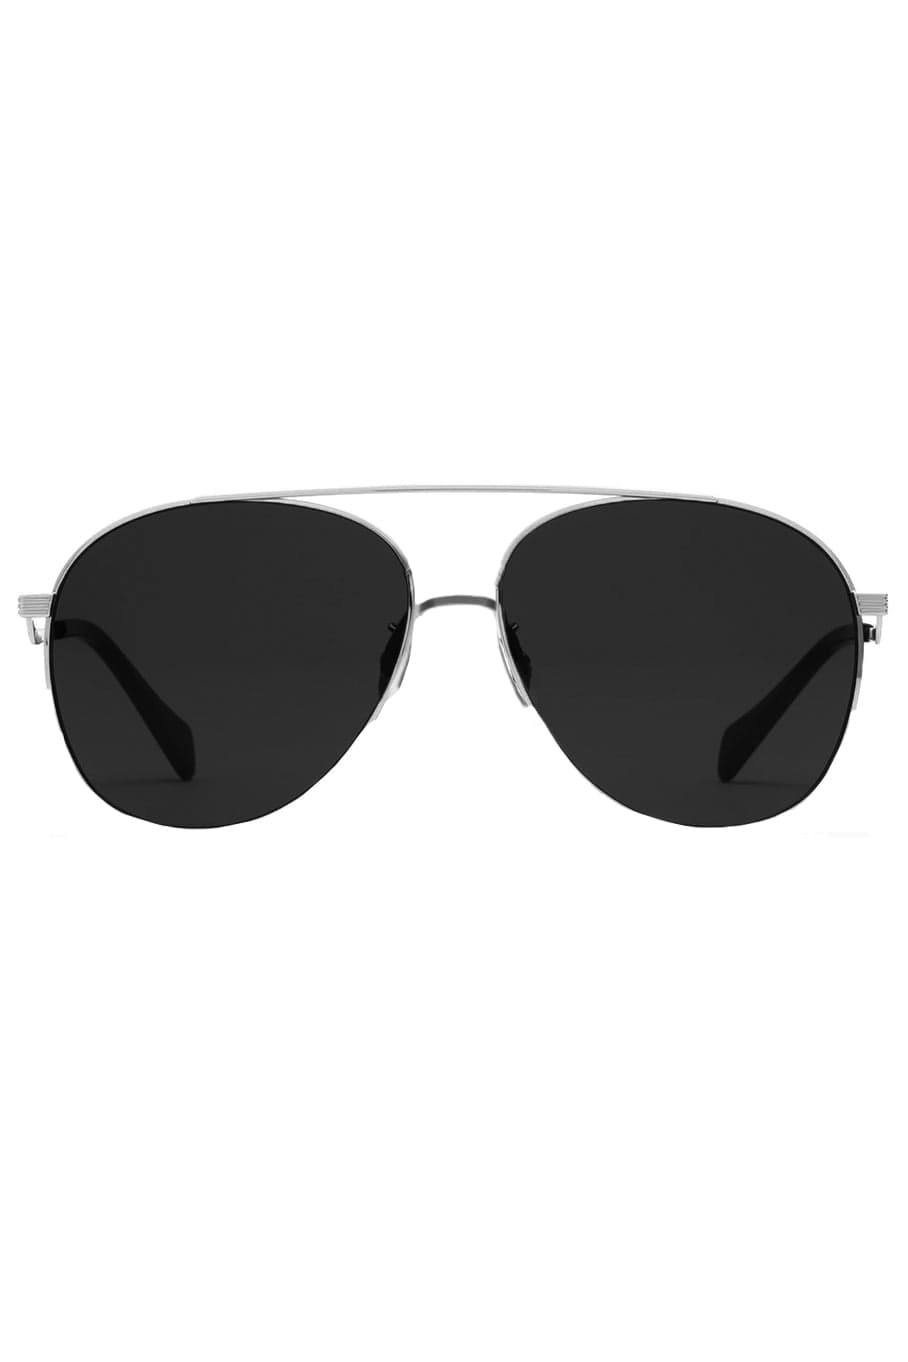 GUCCI-Aviator Sunglasses - Silver-SILVER